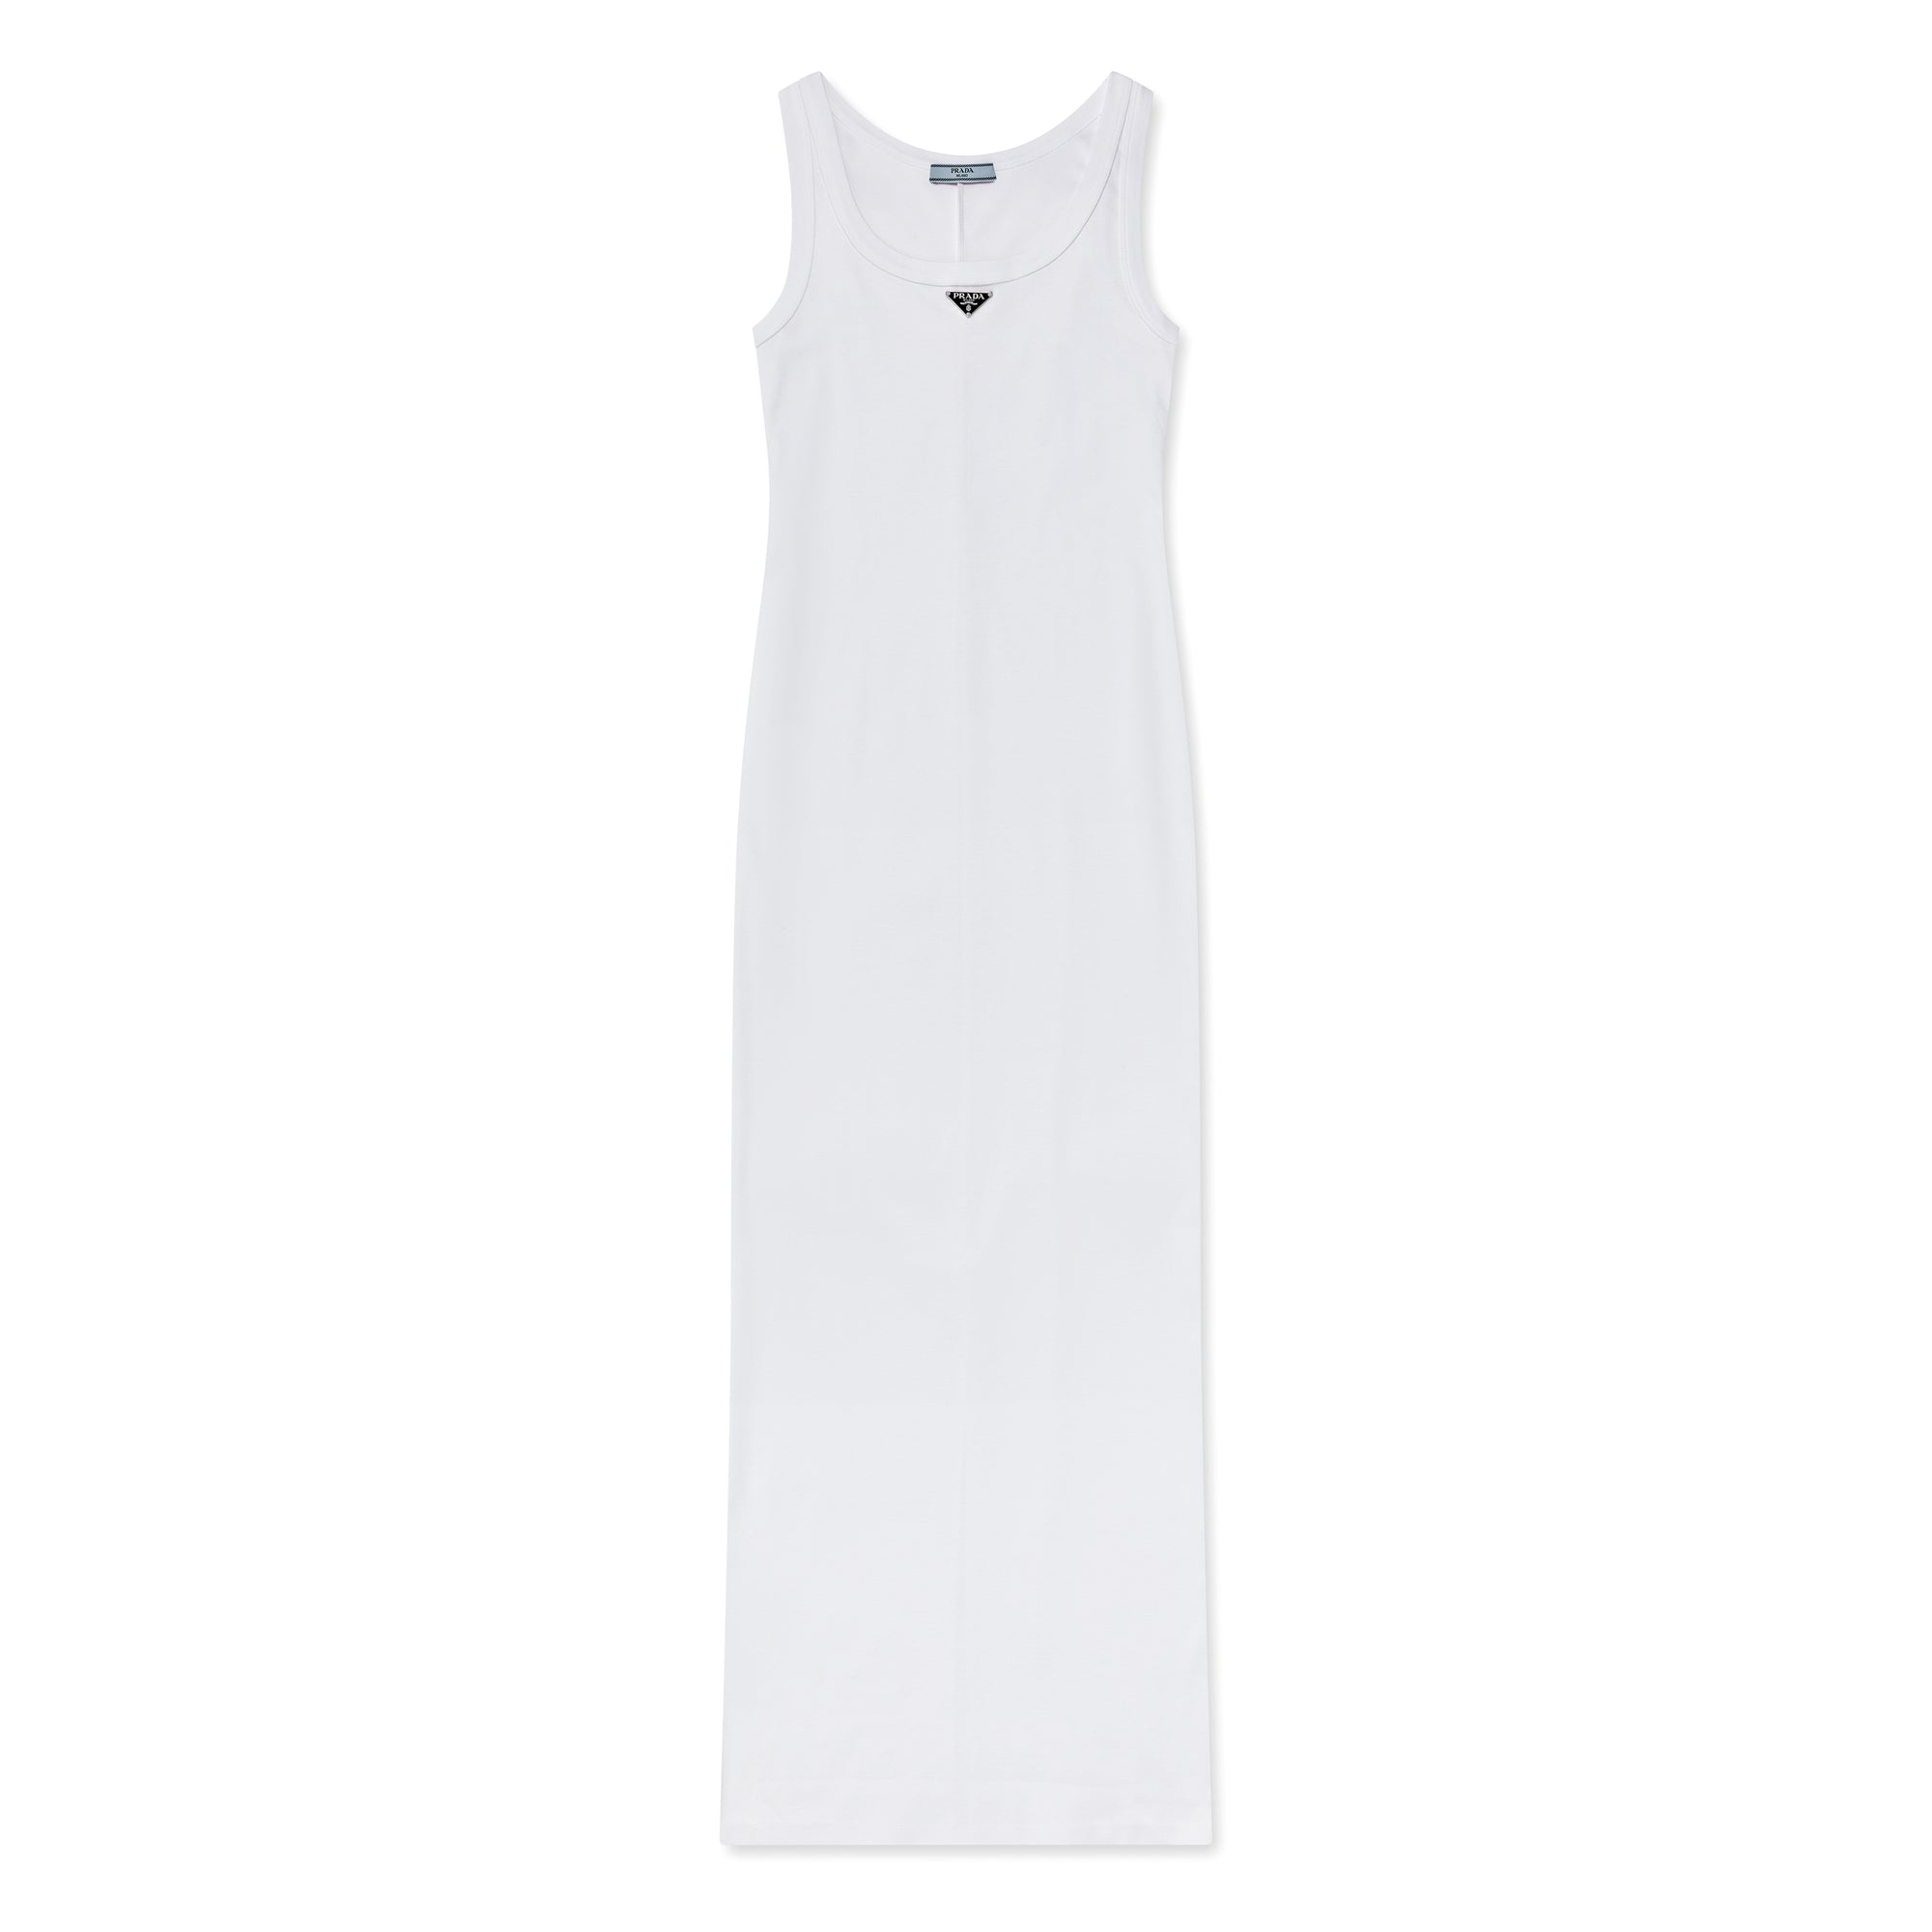 Prada - Women’s Cotton Jersey Dress - (White) view 4